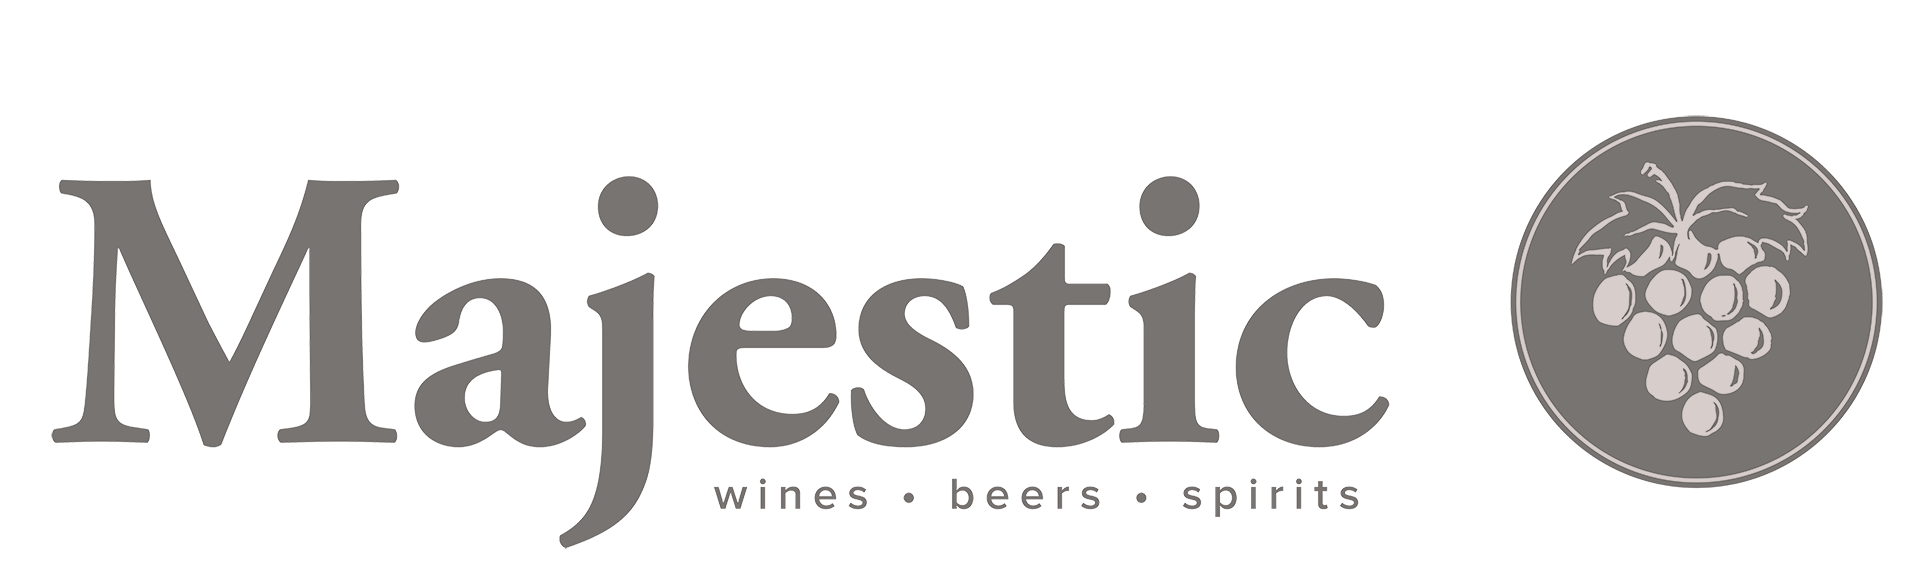 majestic-wine-logo-bw